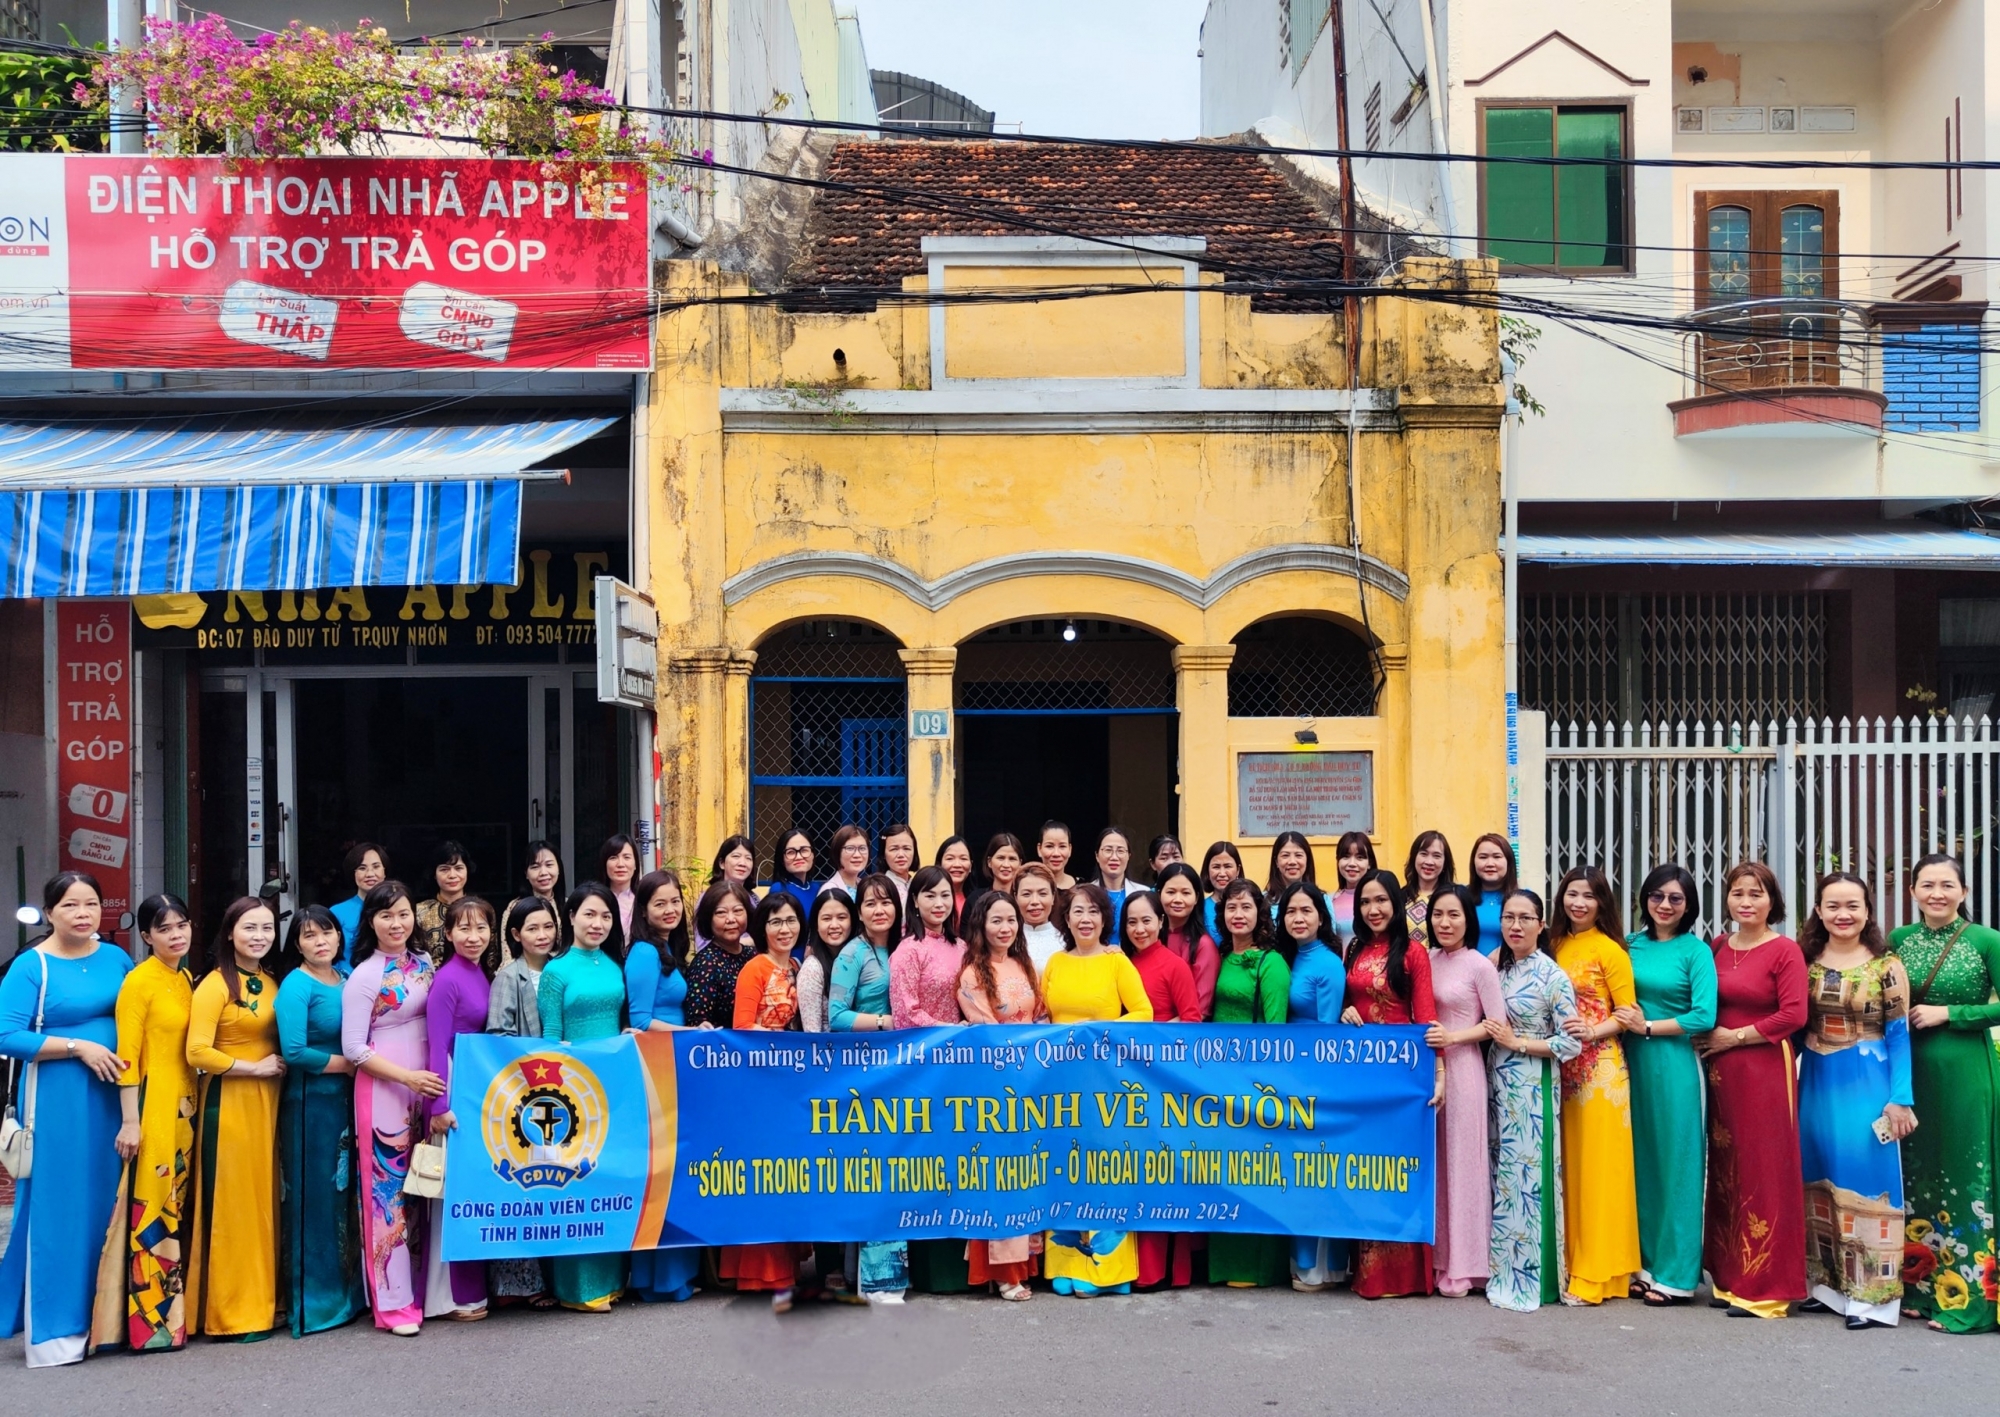 Công đoàn Viên chức tỉnh Bình Định tổ chức hoạt động về nguồn cho nữ đoàn viên